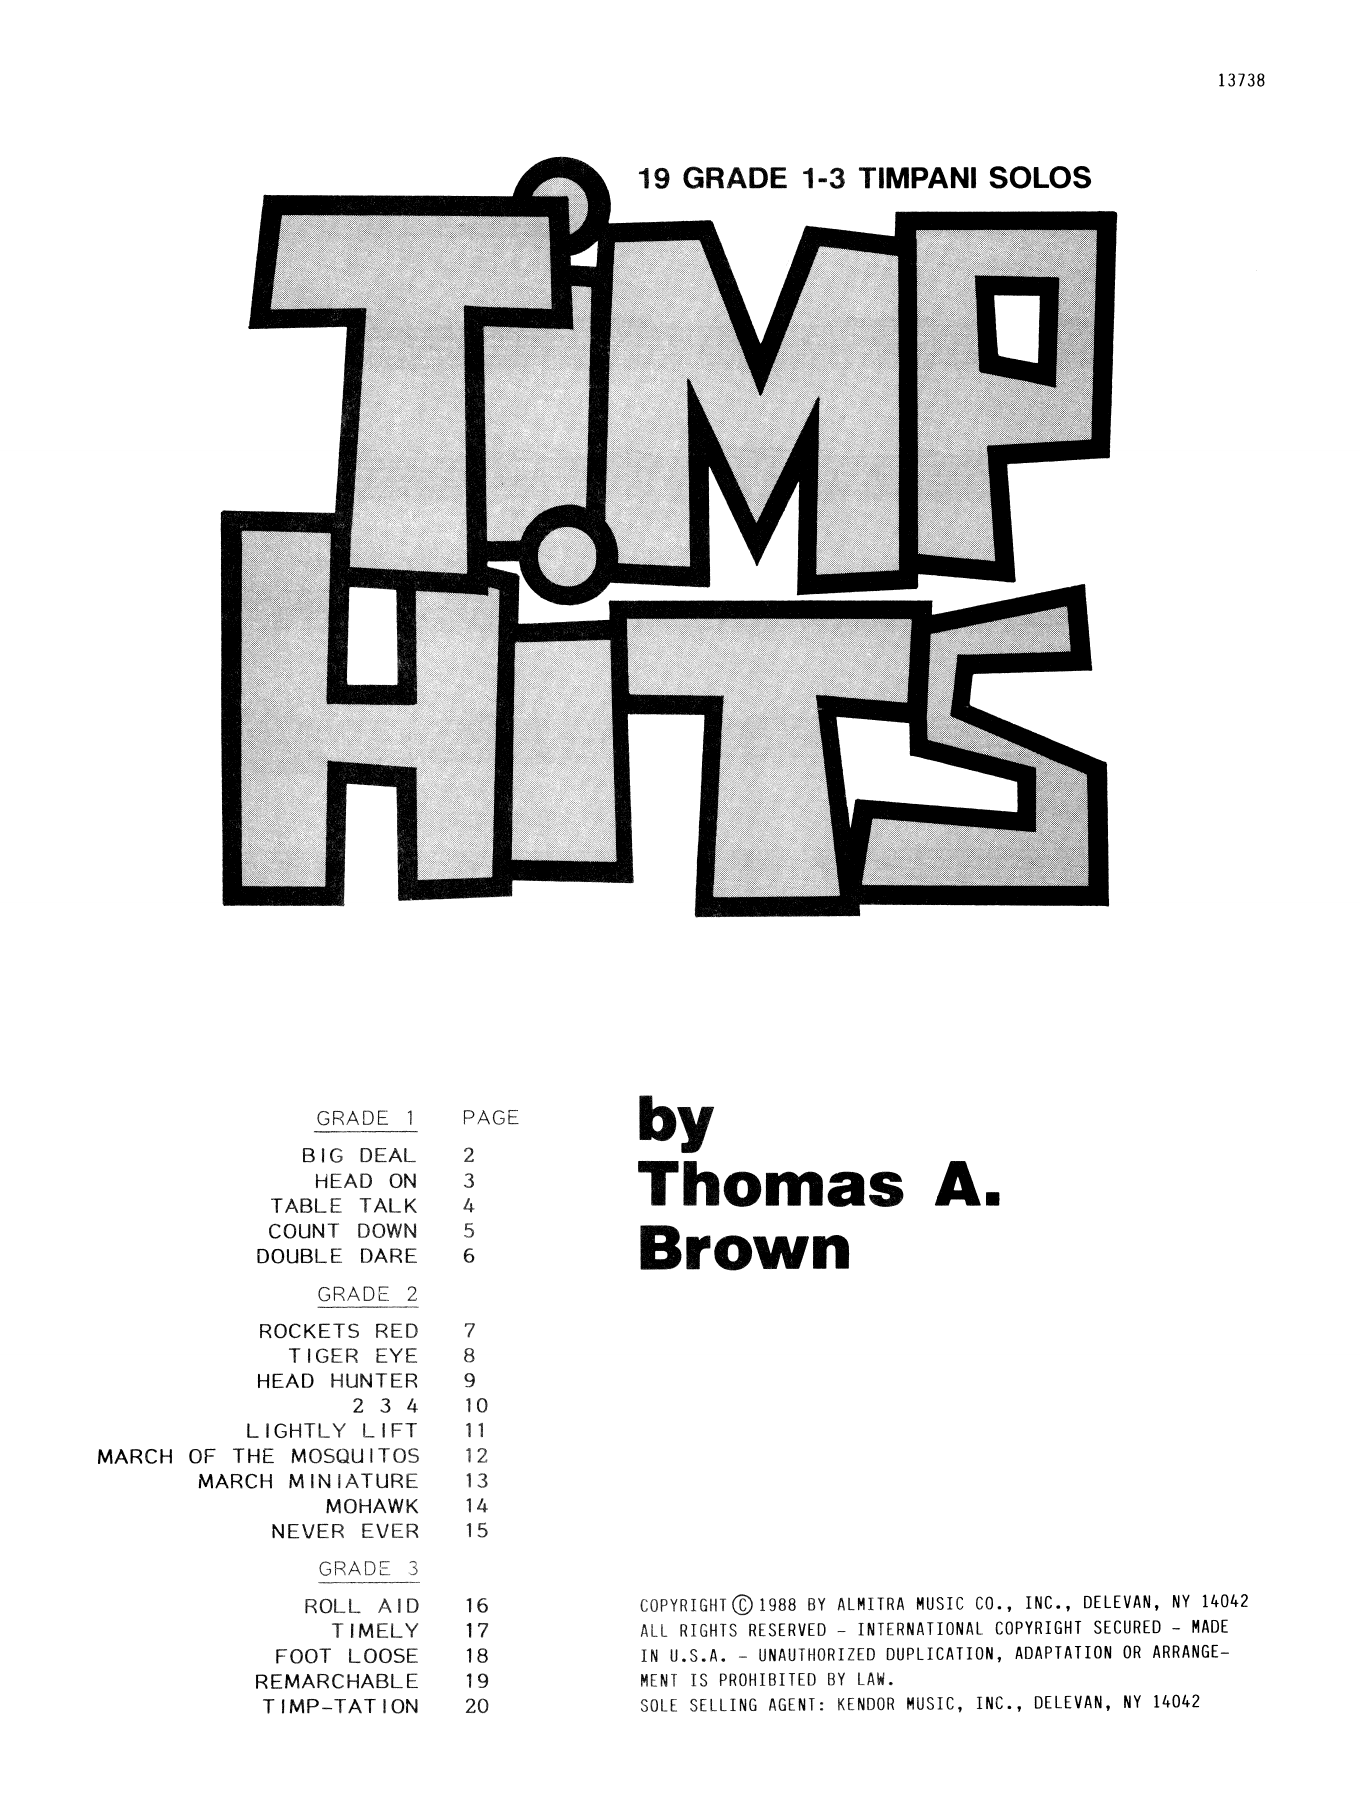 Download Thomas Brown Timp Hits Sheet Music